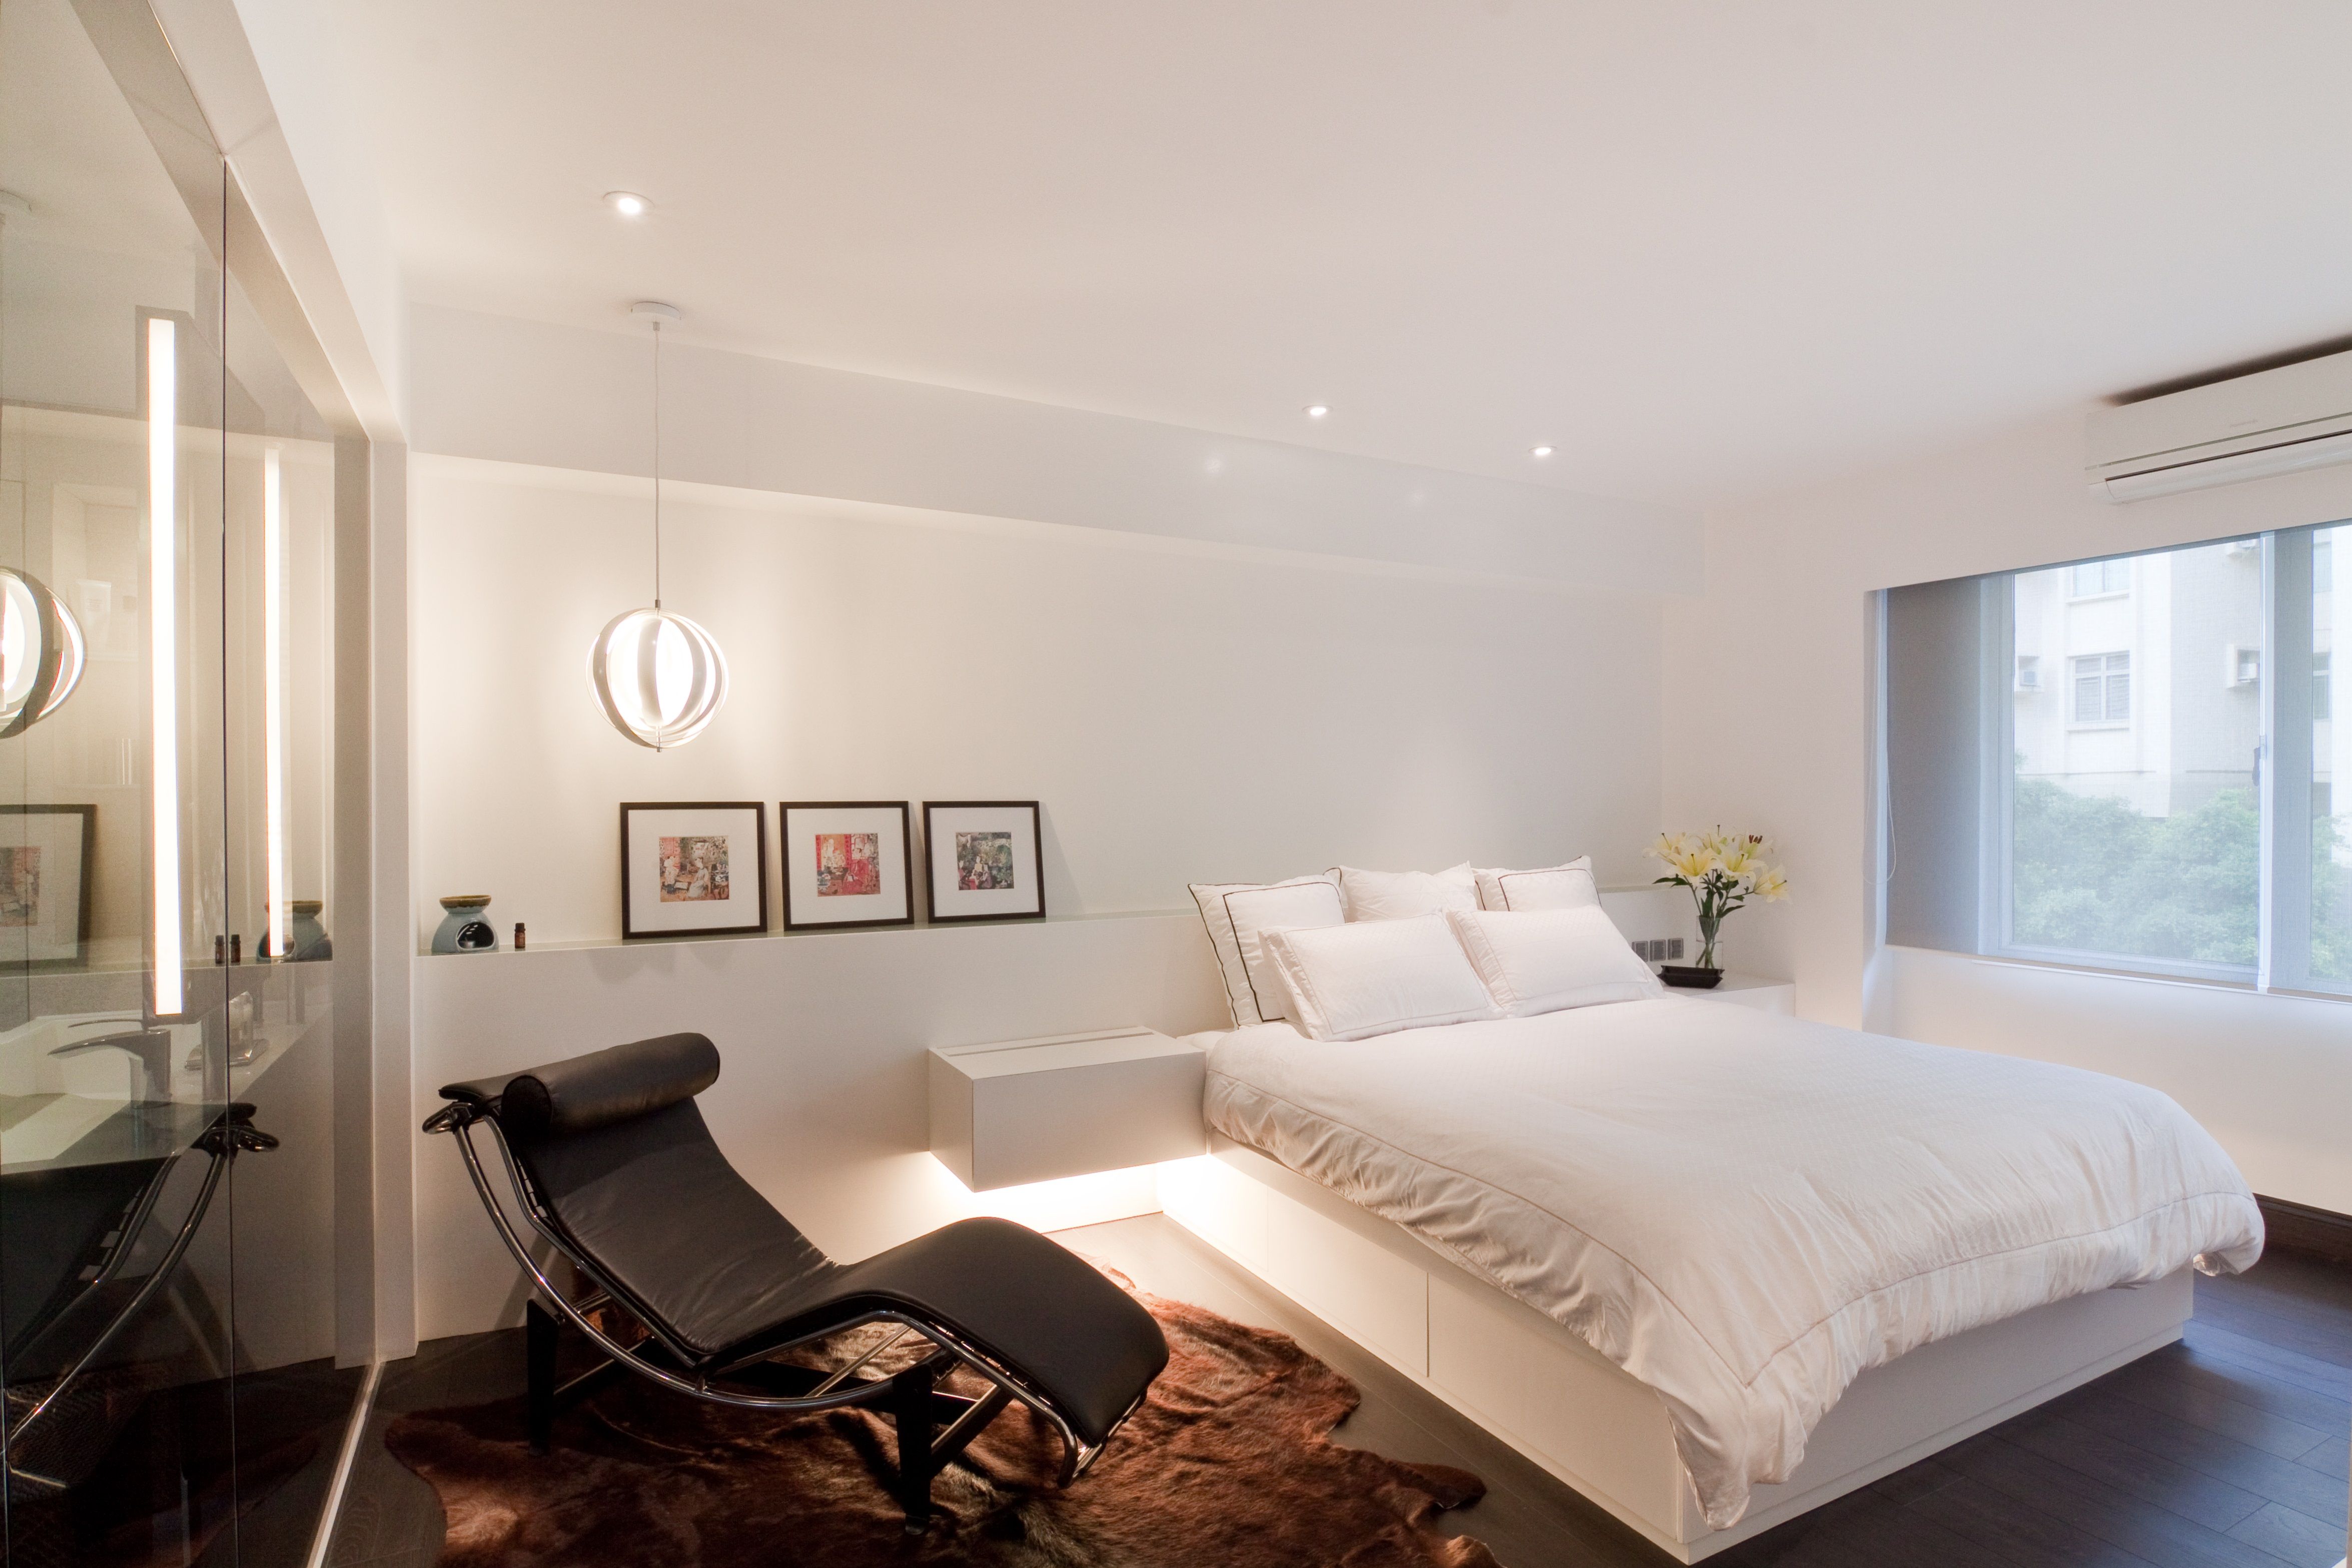 欧式 北欧 简约 现代 温馨 西安 装修 设计 卧室图片来自翼森设计在一屋一风情的分享